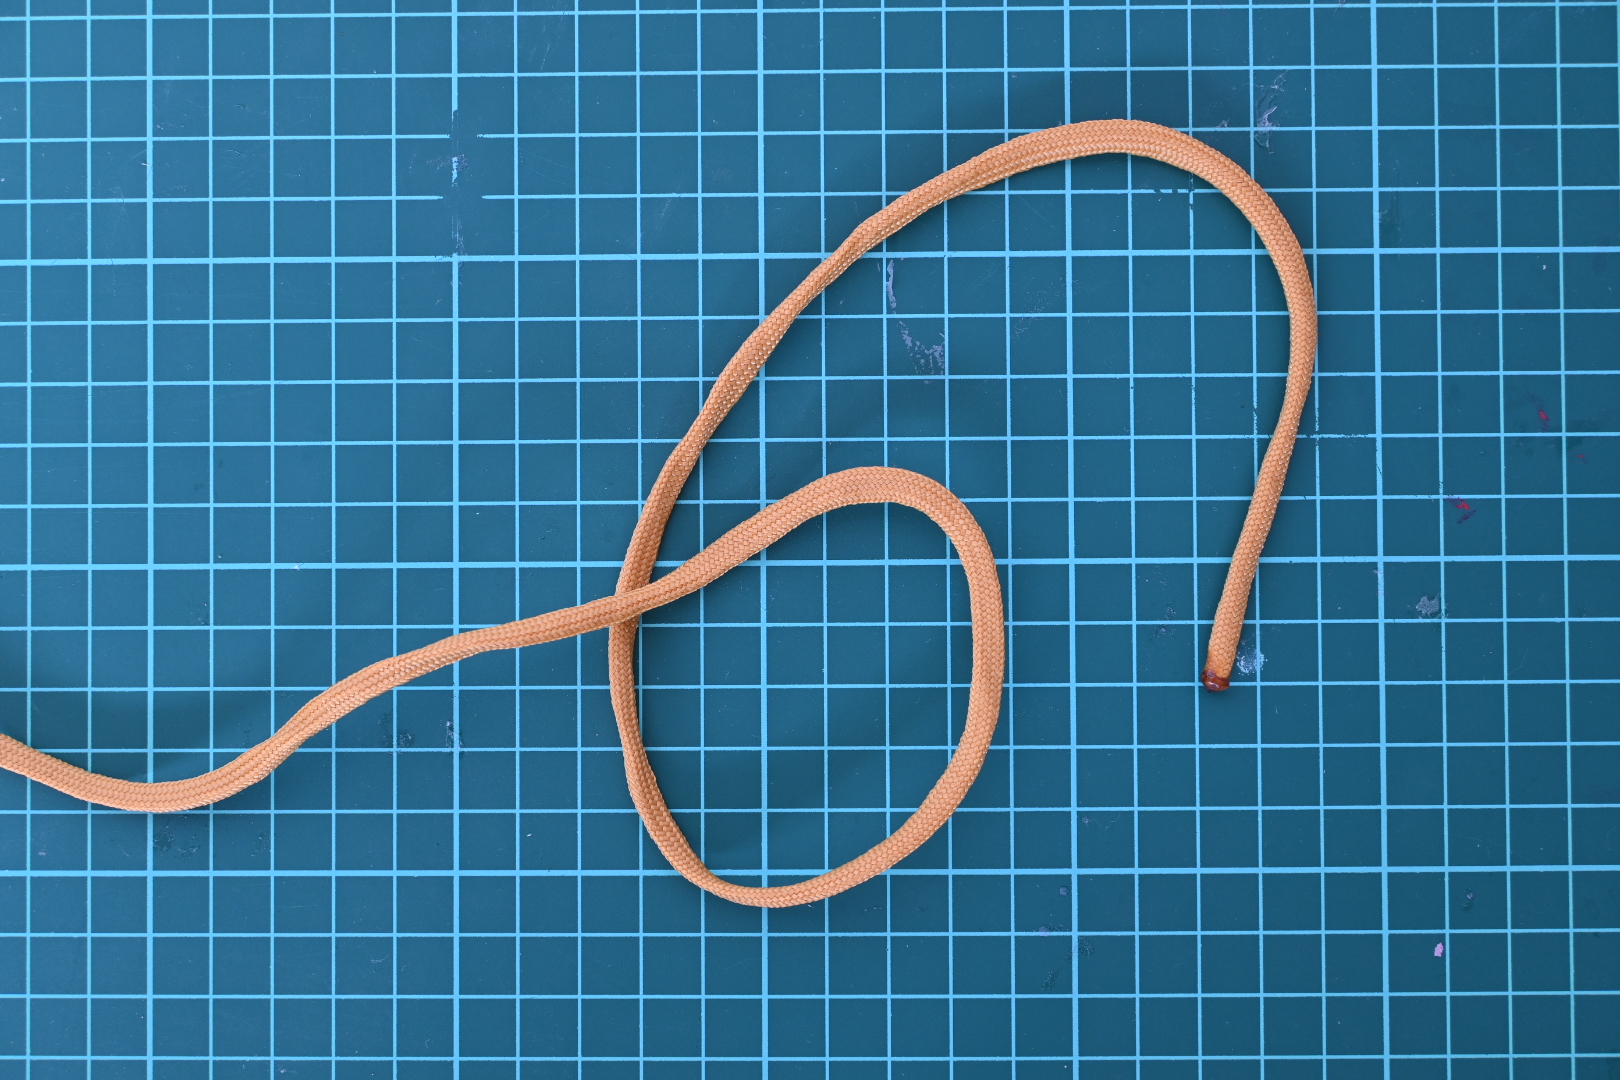 1. ロープの端を20cmくらい残して「輪っか」を作ります